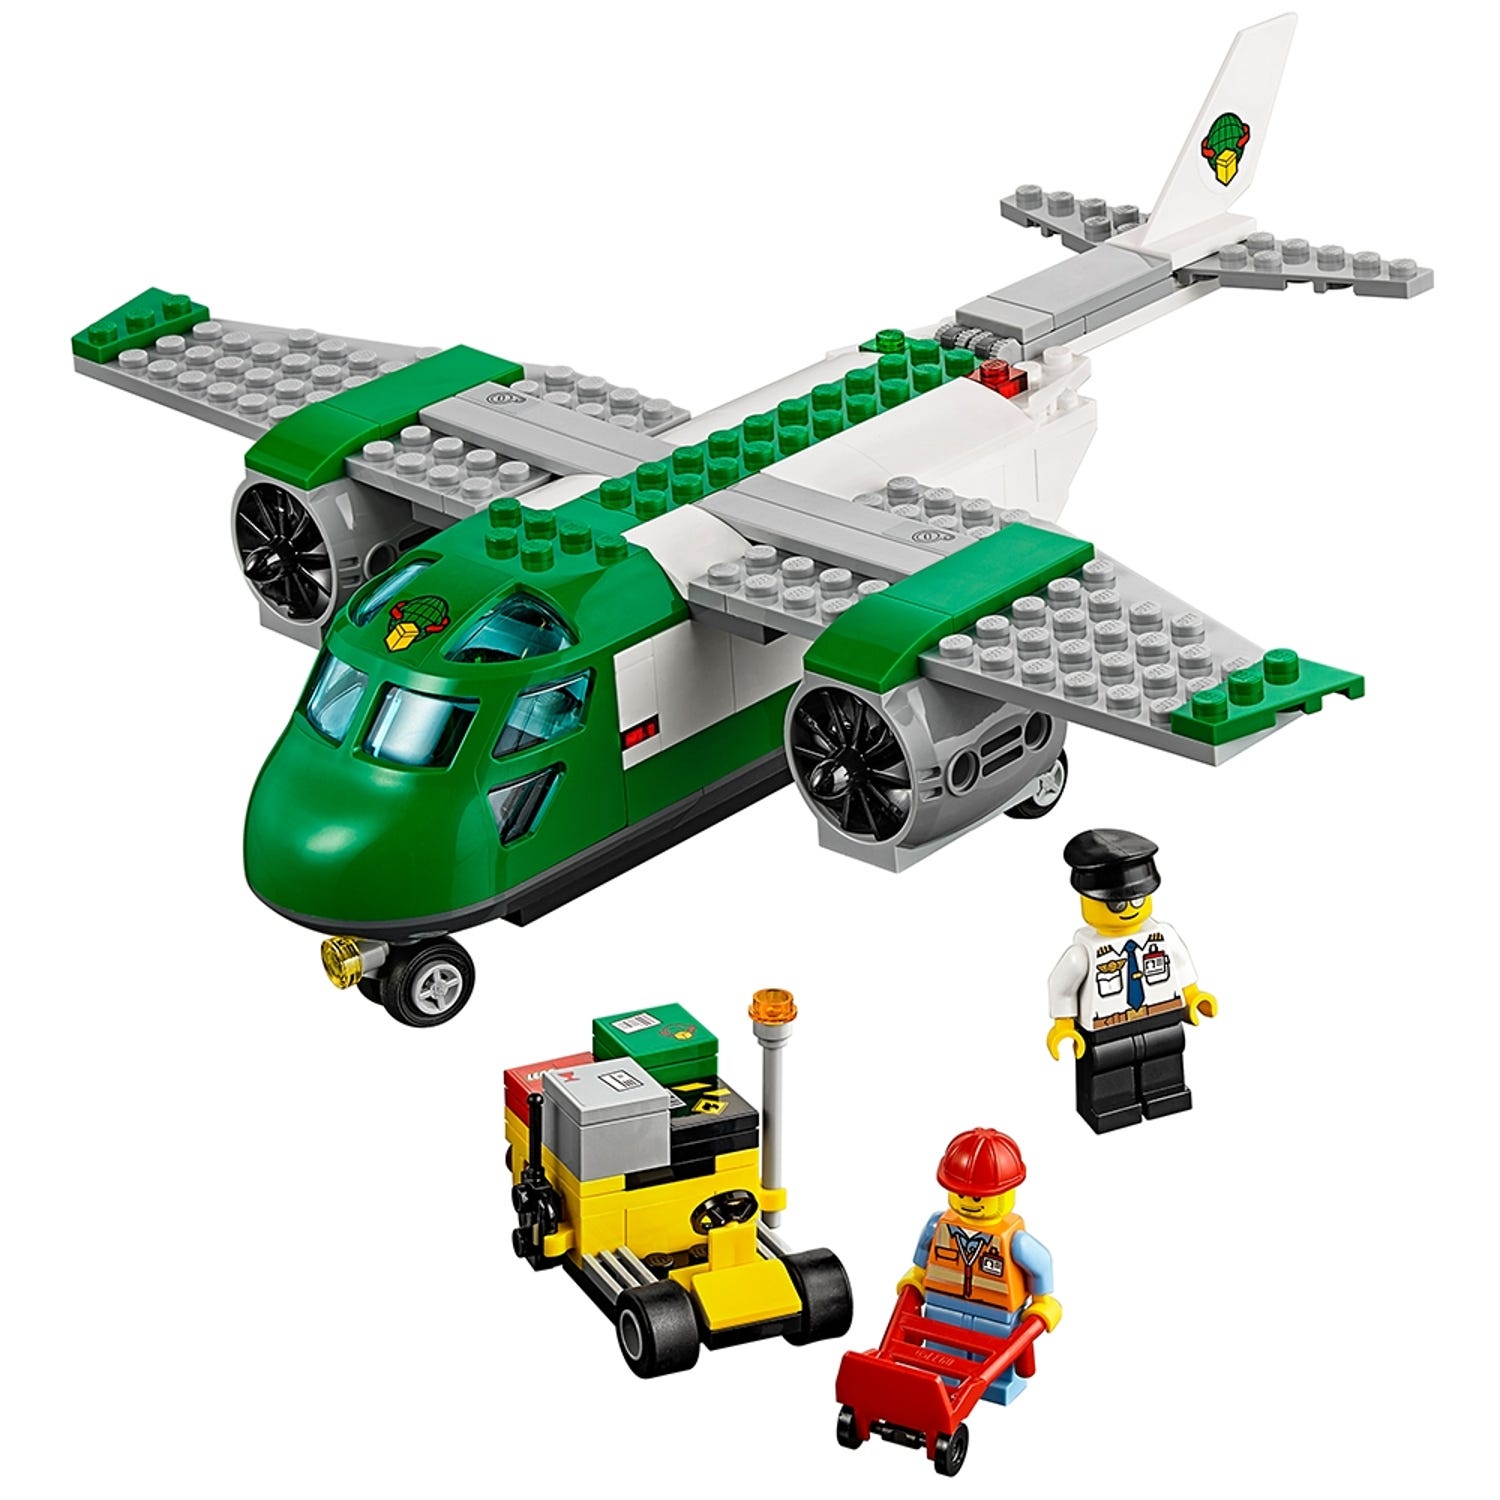 lego city cargo heliplane